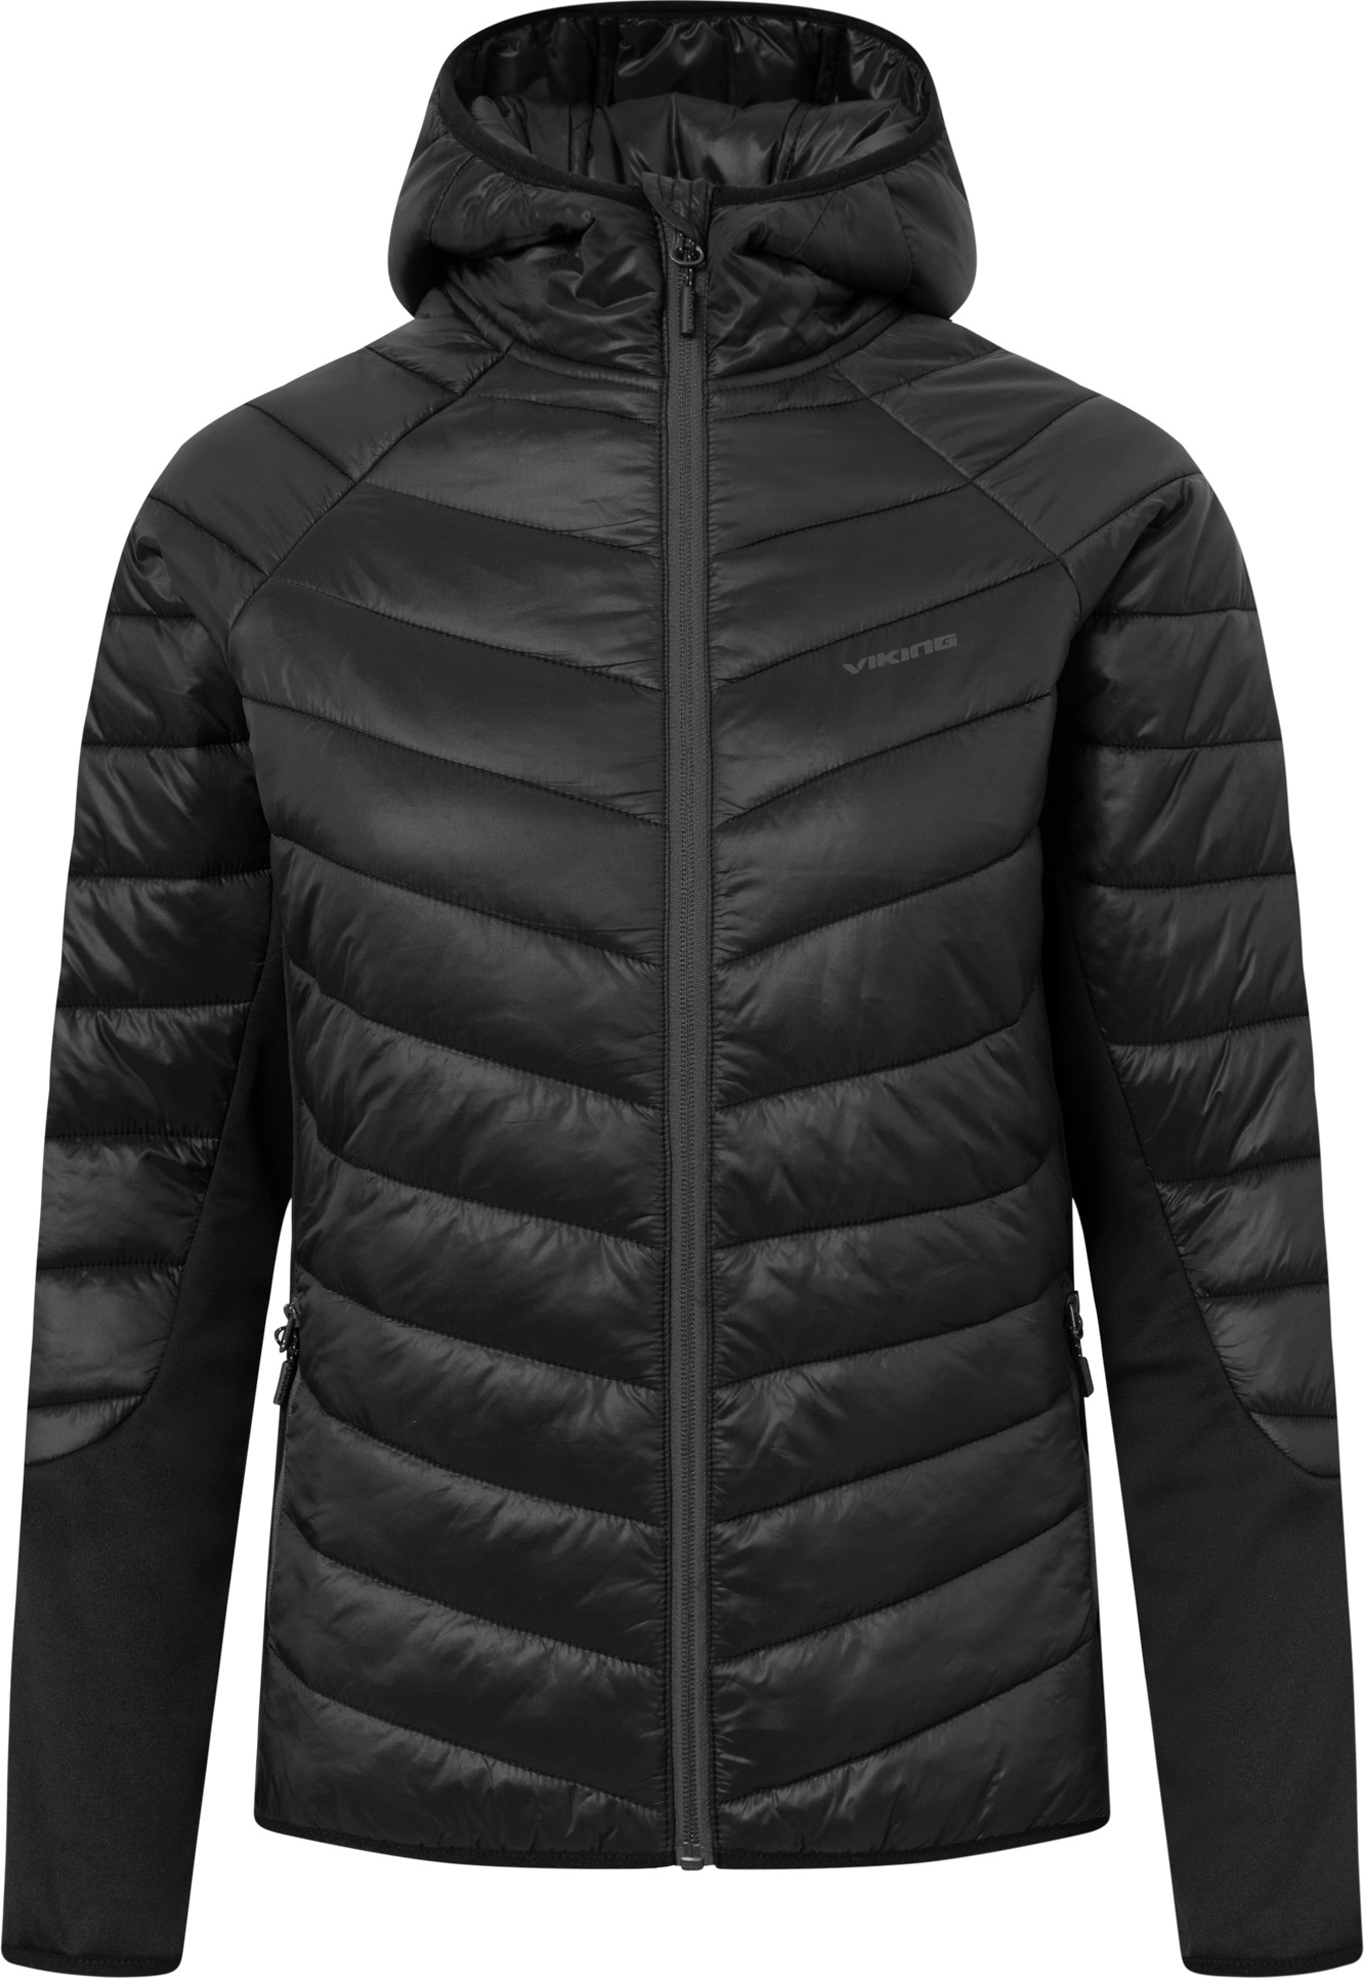 Dámská outdoorová bunda VIKING Becky Warm Pro černá Velikost: XL